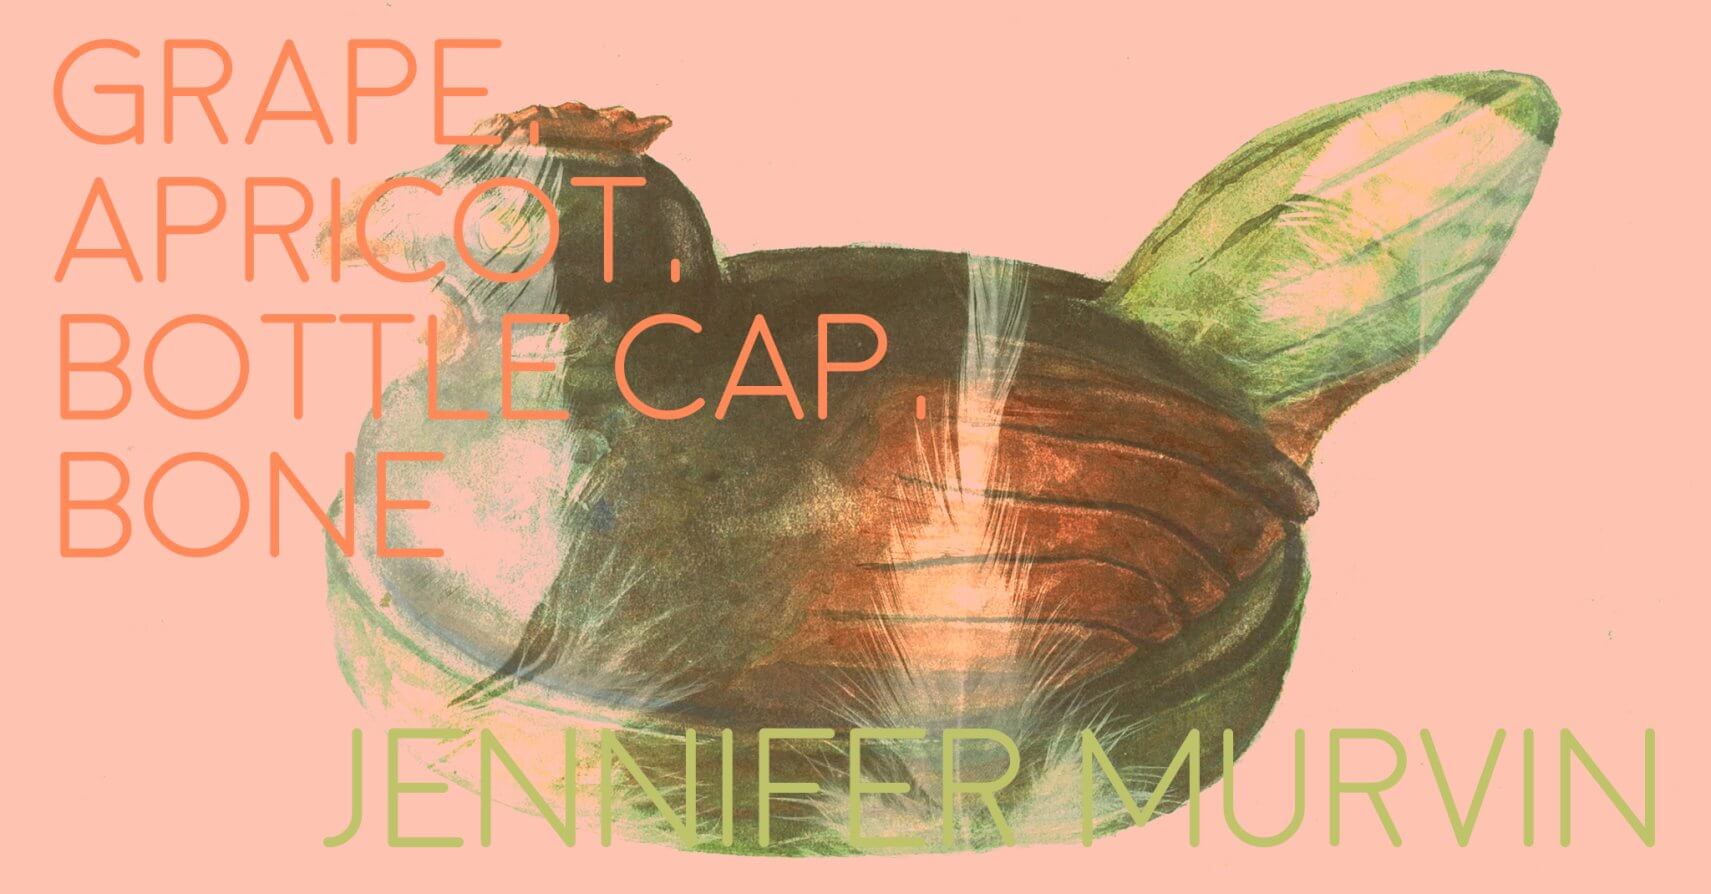 GRAPE, APRICOT, BOTTLE CAP, BONE by Jennifer Murvin